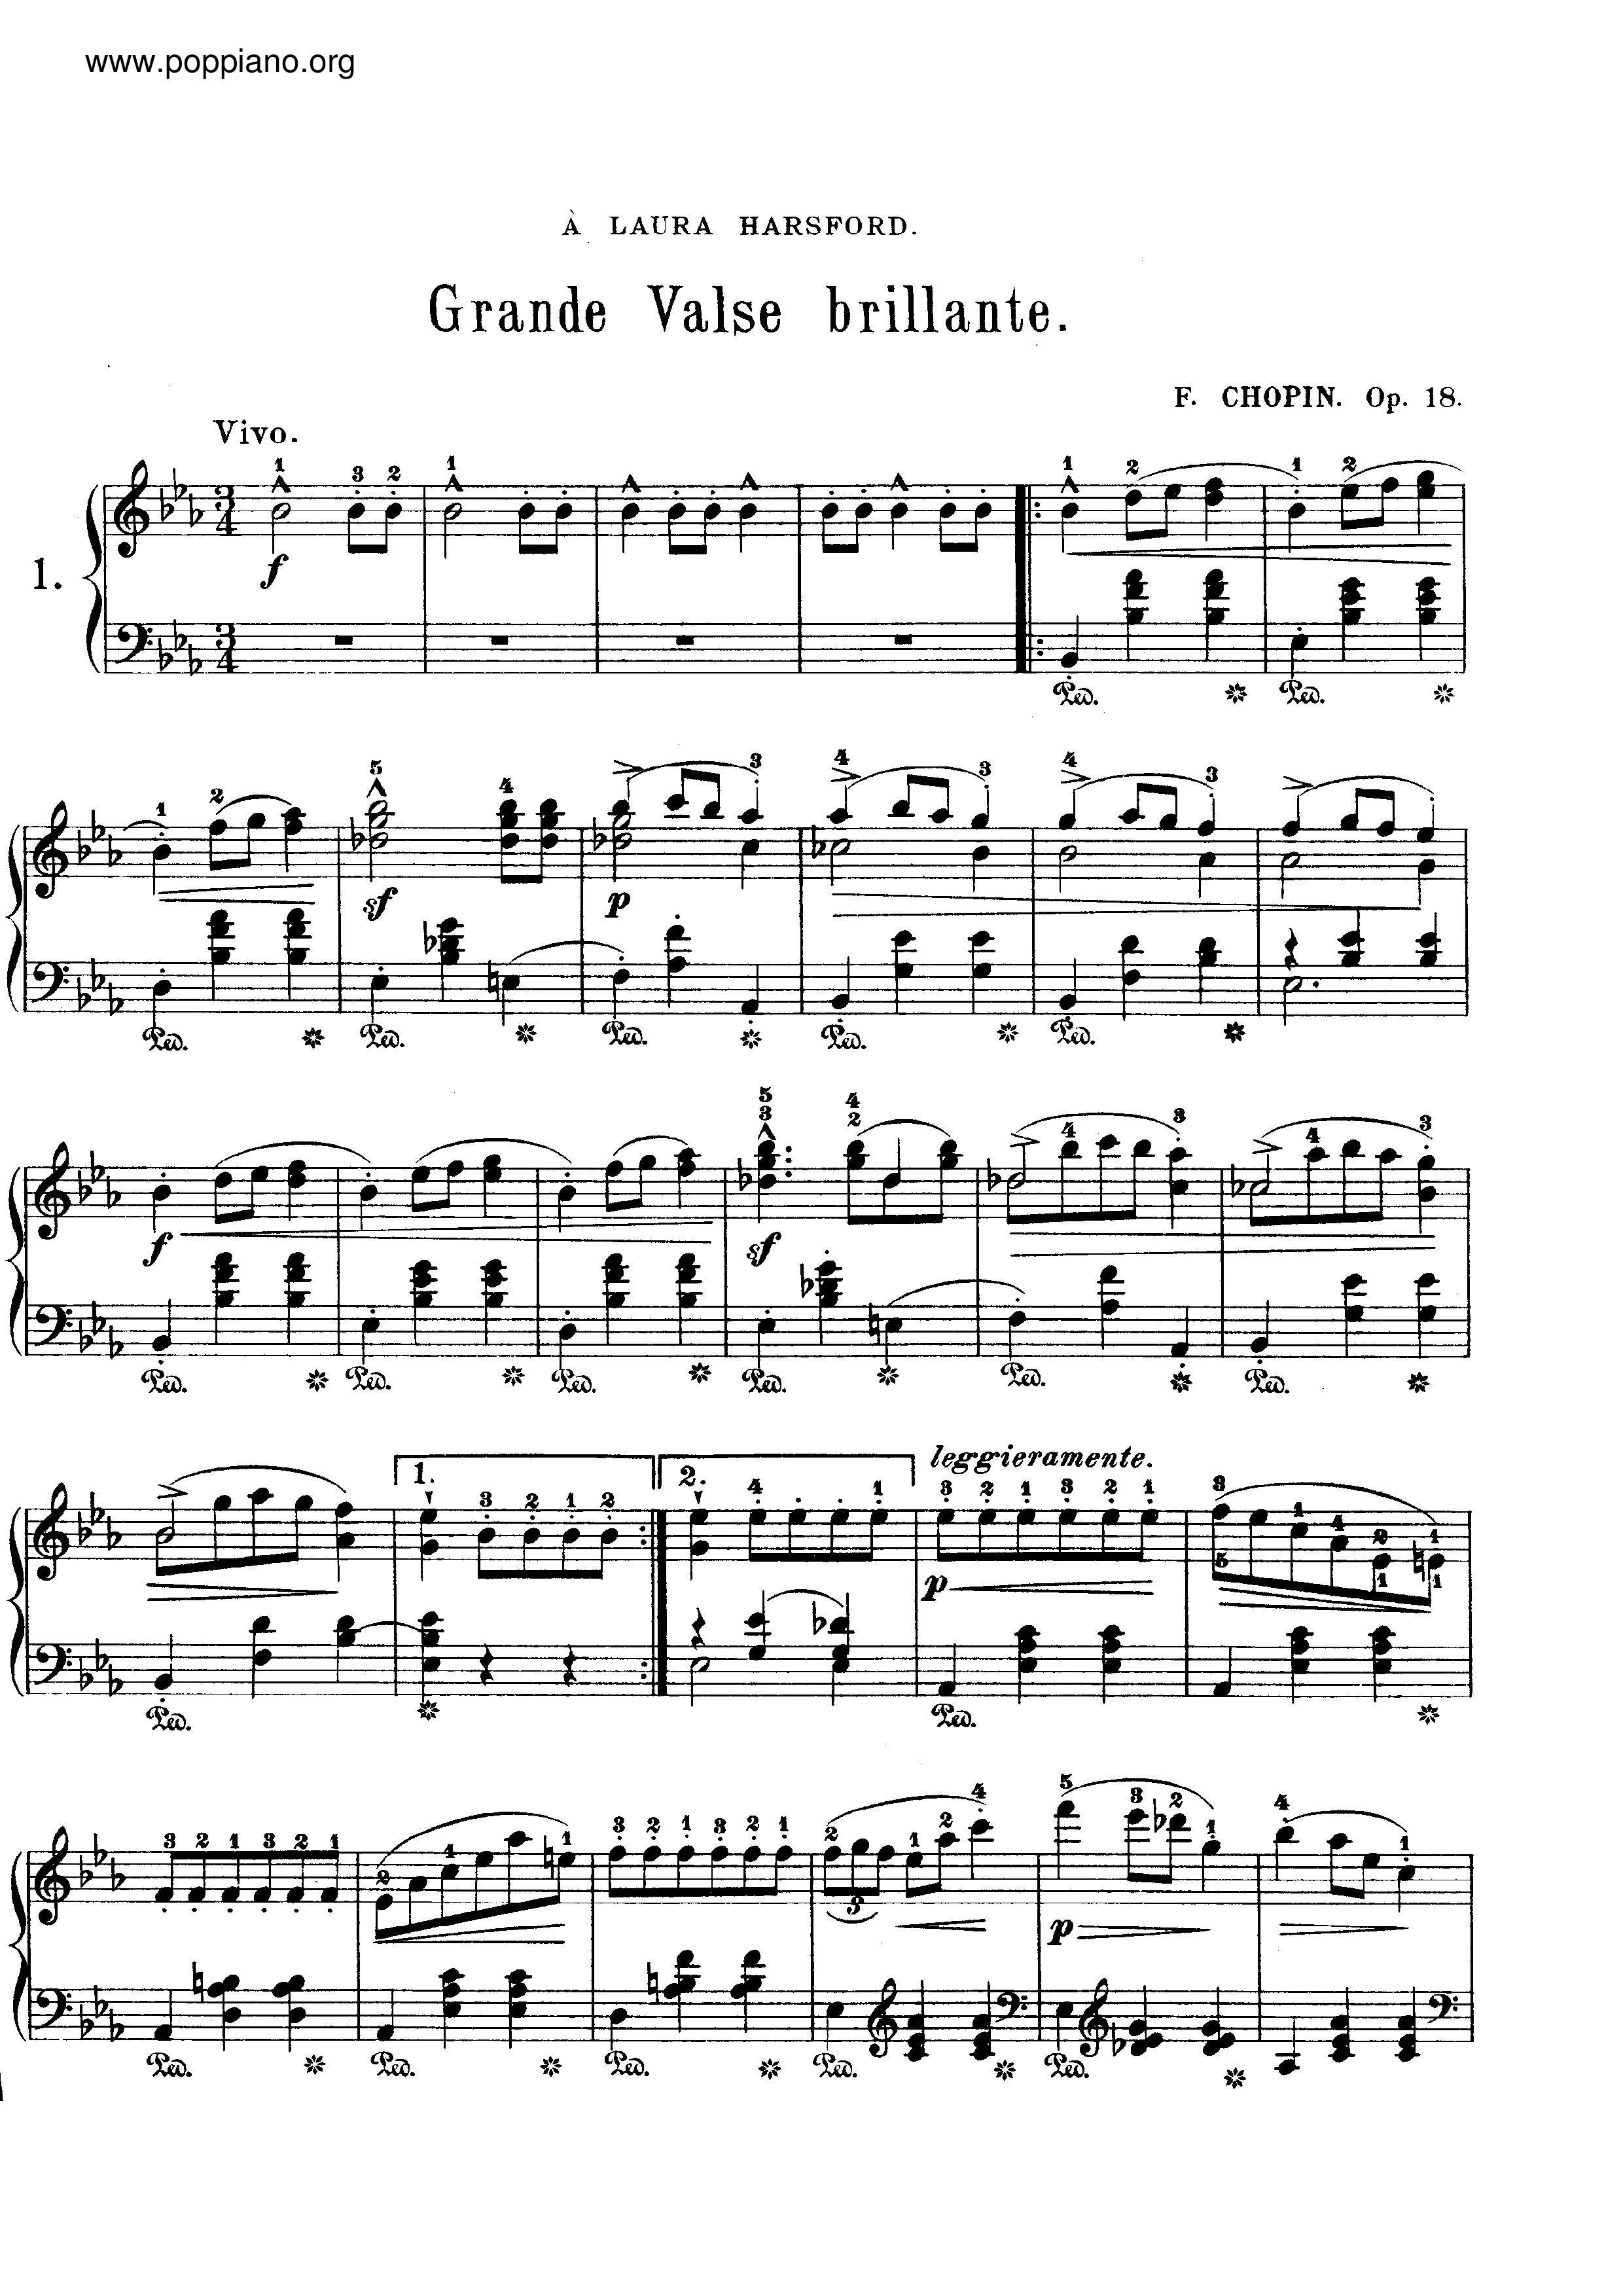 Op. 18, Grande Waltz Brillanteピアノ譜